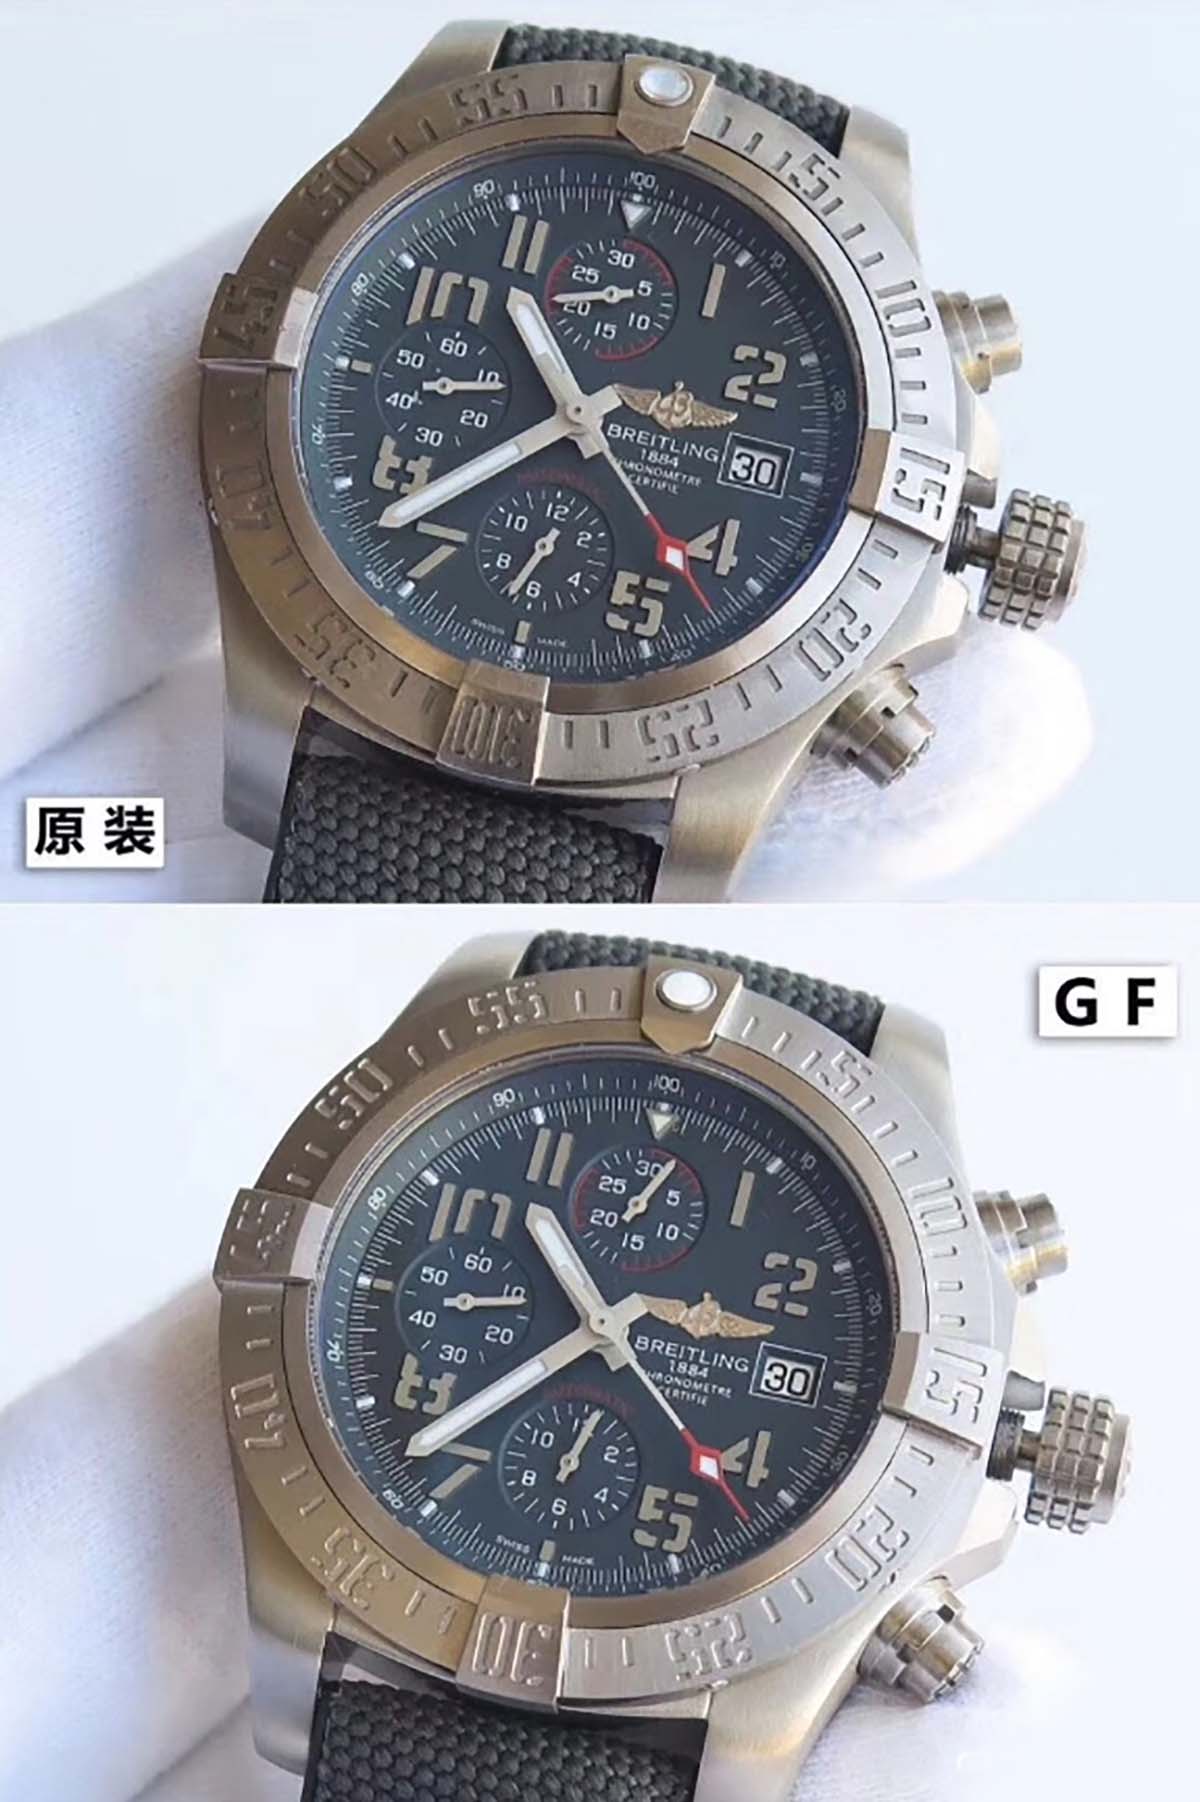 GF厂百年灵复仇者战机复刻腕表对比正品图文评测-评鉴GF厂腕表